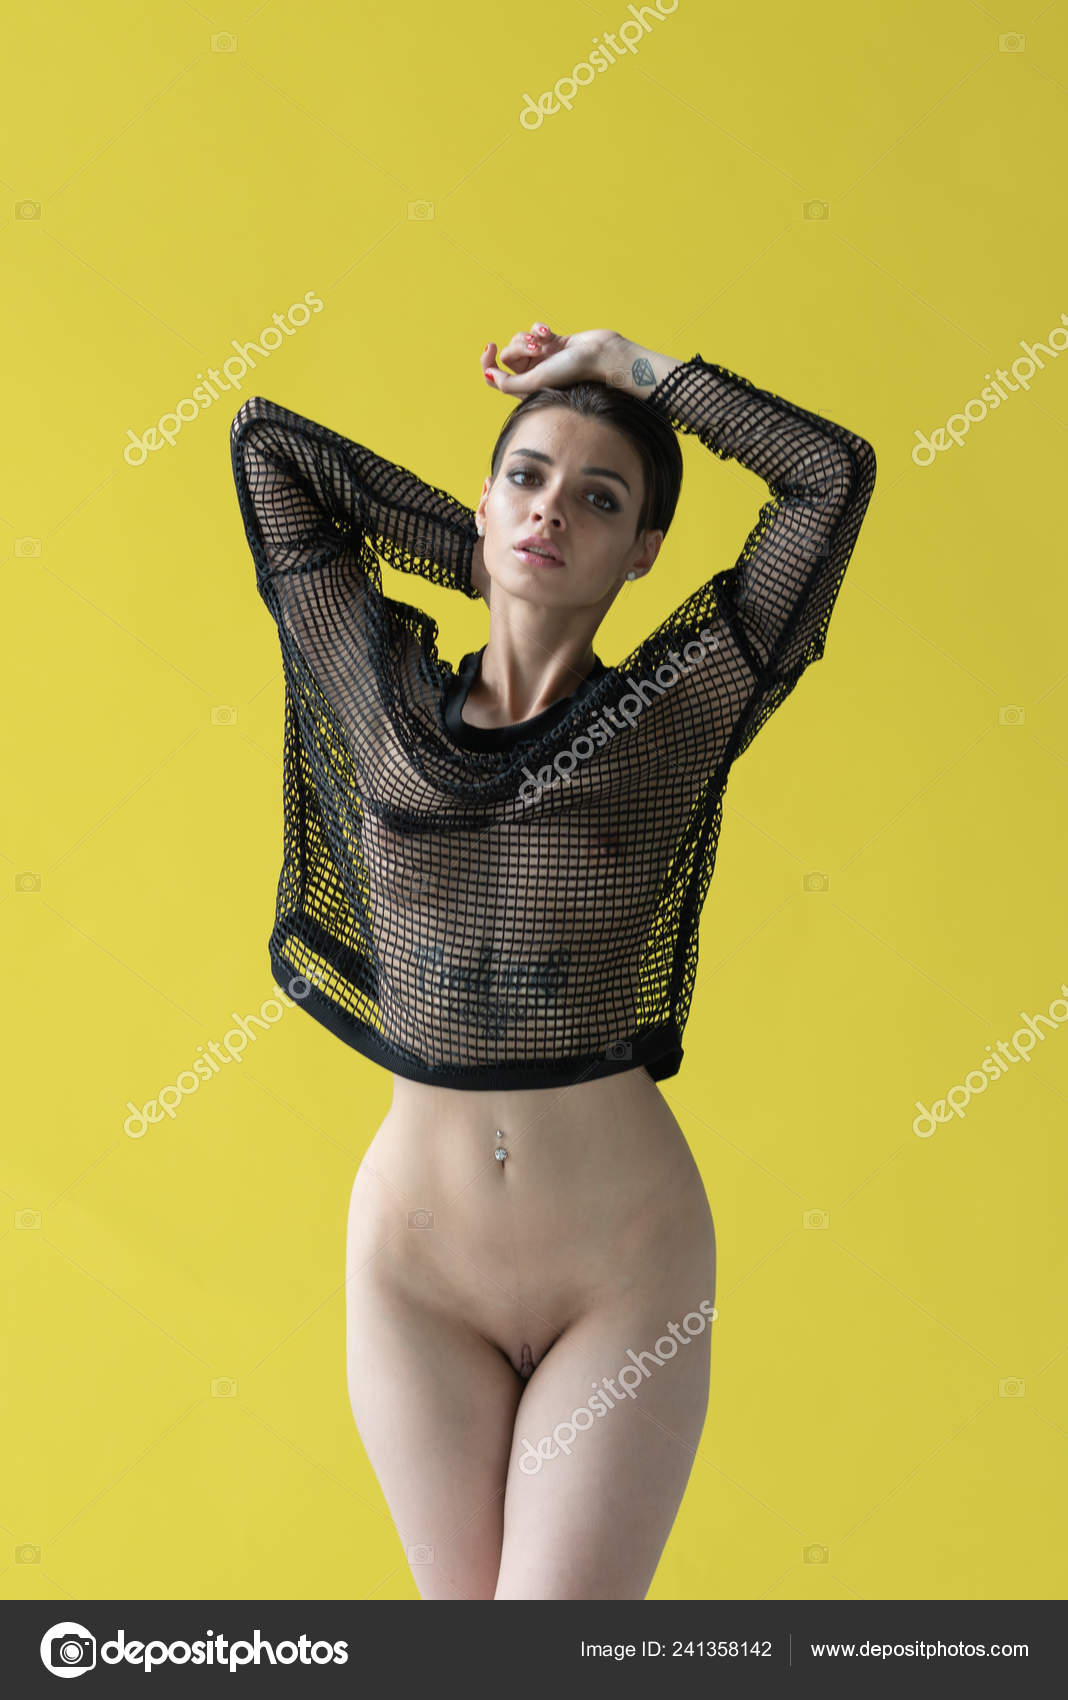 https://st4n.depositphotos.com/10086424/24135/i/1600/depositphotos_241358142-stock-photo-young-beautiful-girl-posing-nude.jpg